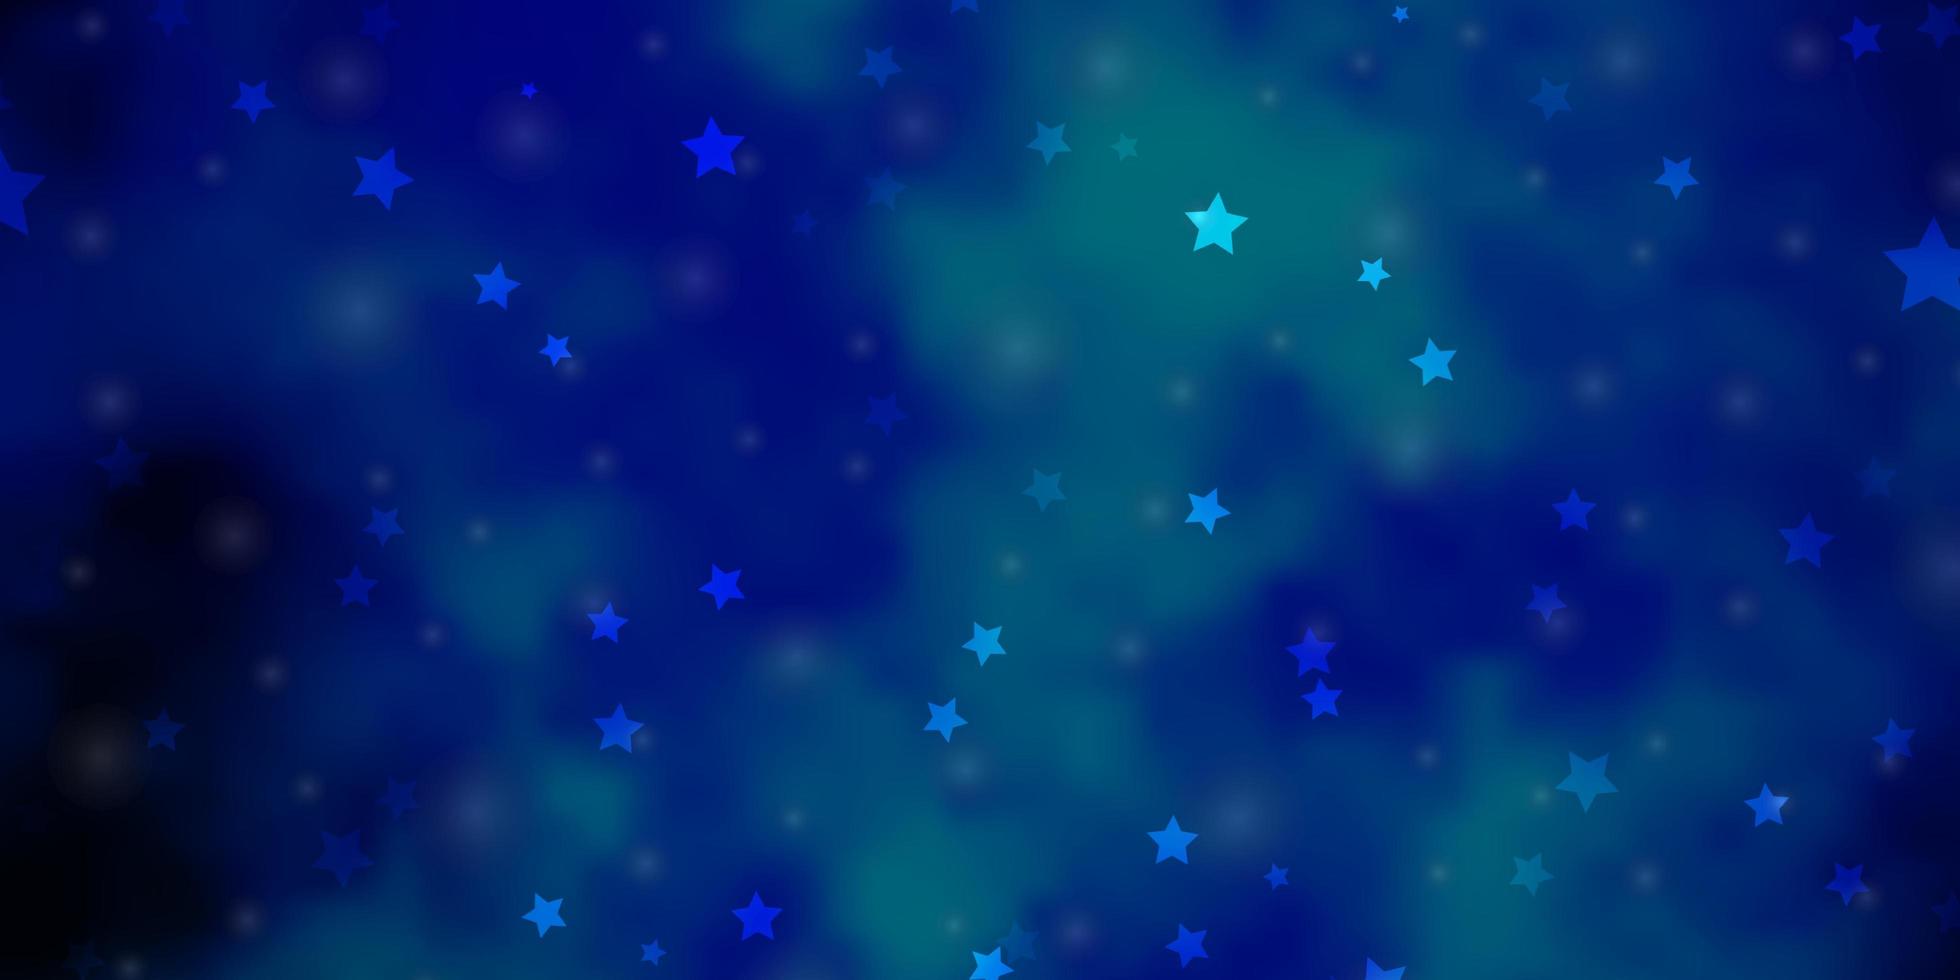 plantilla de vector azul claro con estrellas de neón. difuminar el diseño decorativo en un estilo sencillo con estrellas. tema para teléfonos celulares.